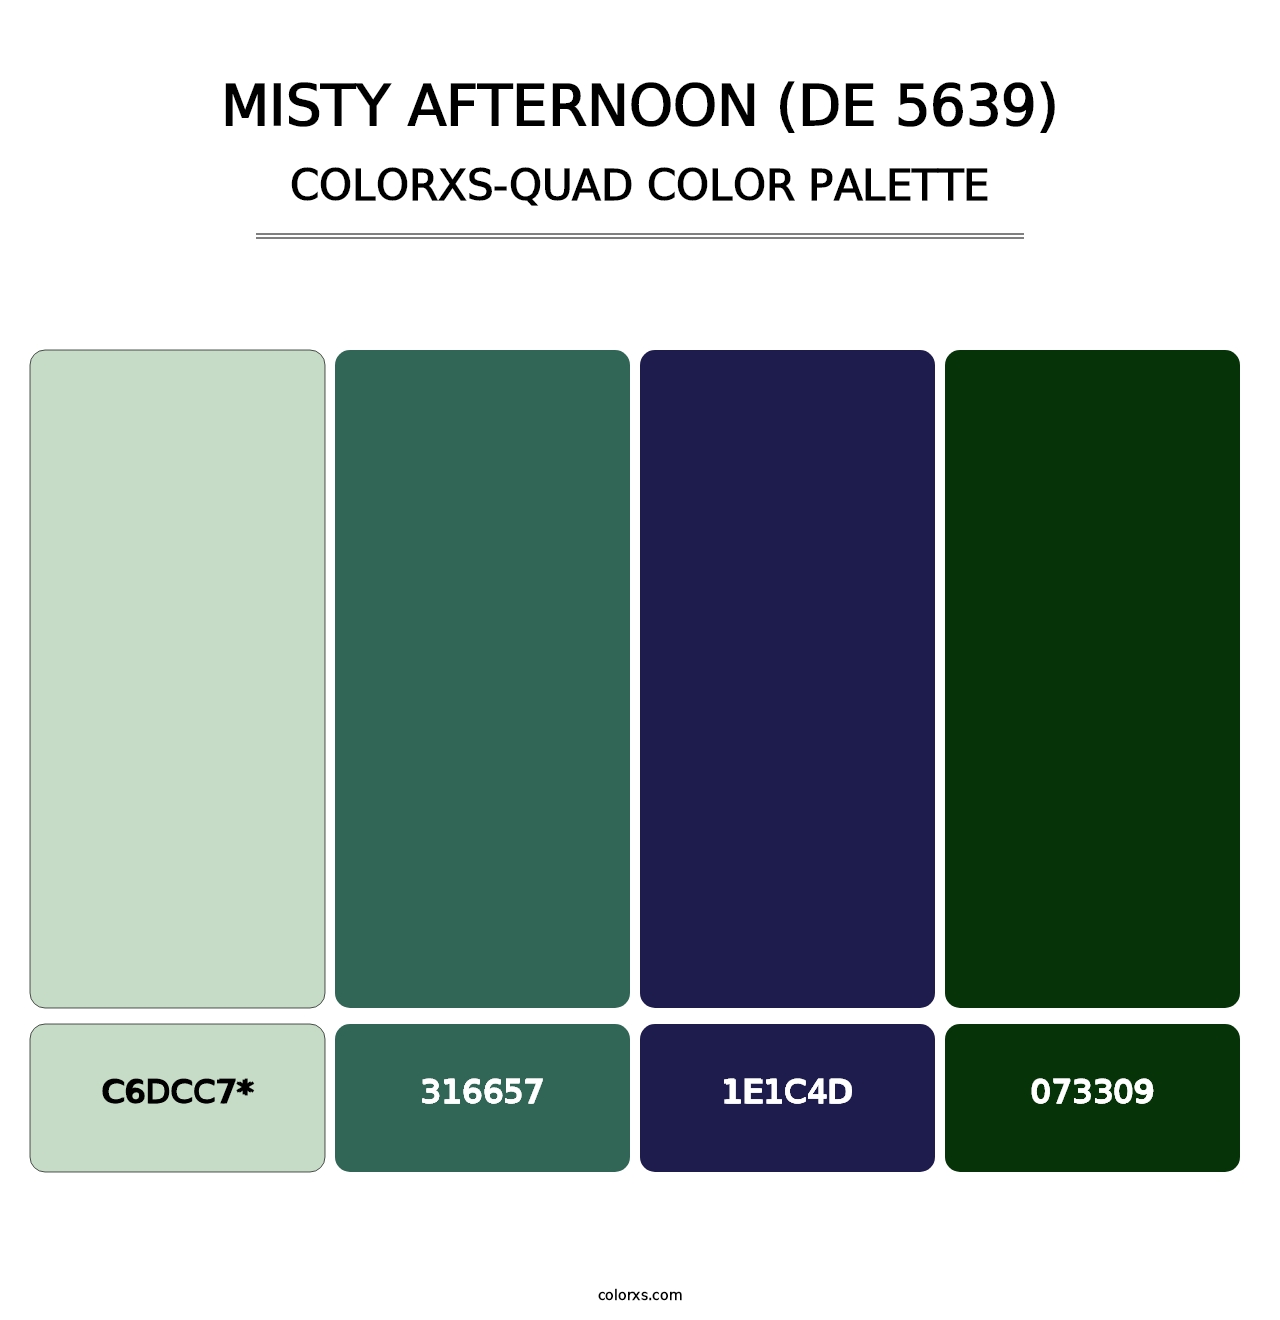 Misty Afternoon (DE 5639) - Colorxs Quad Palette